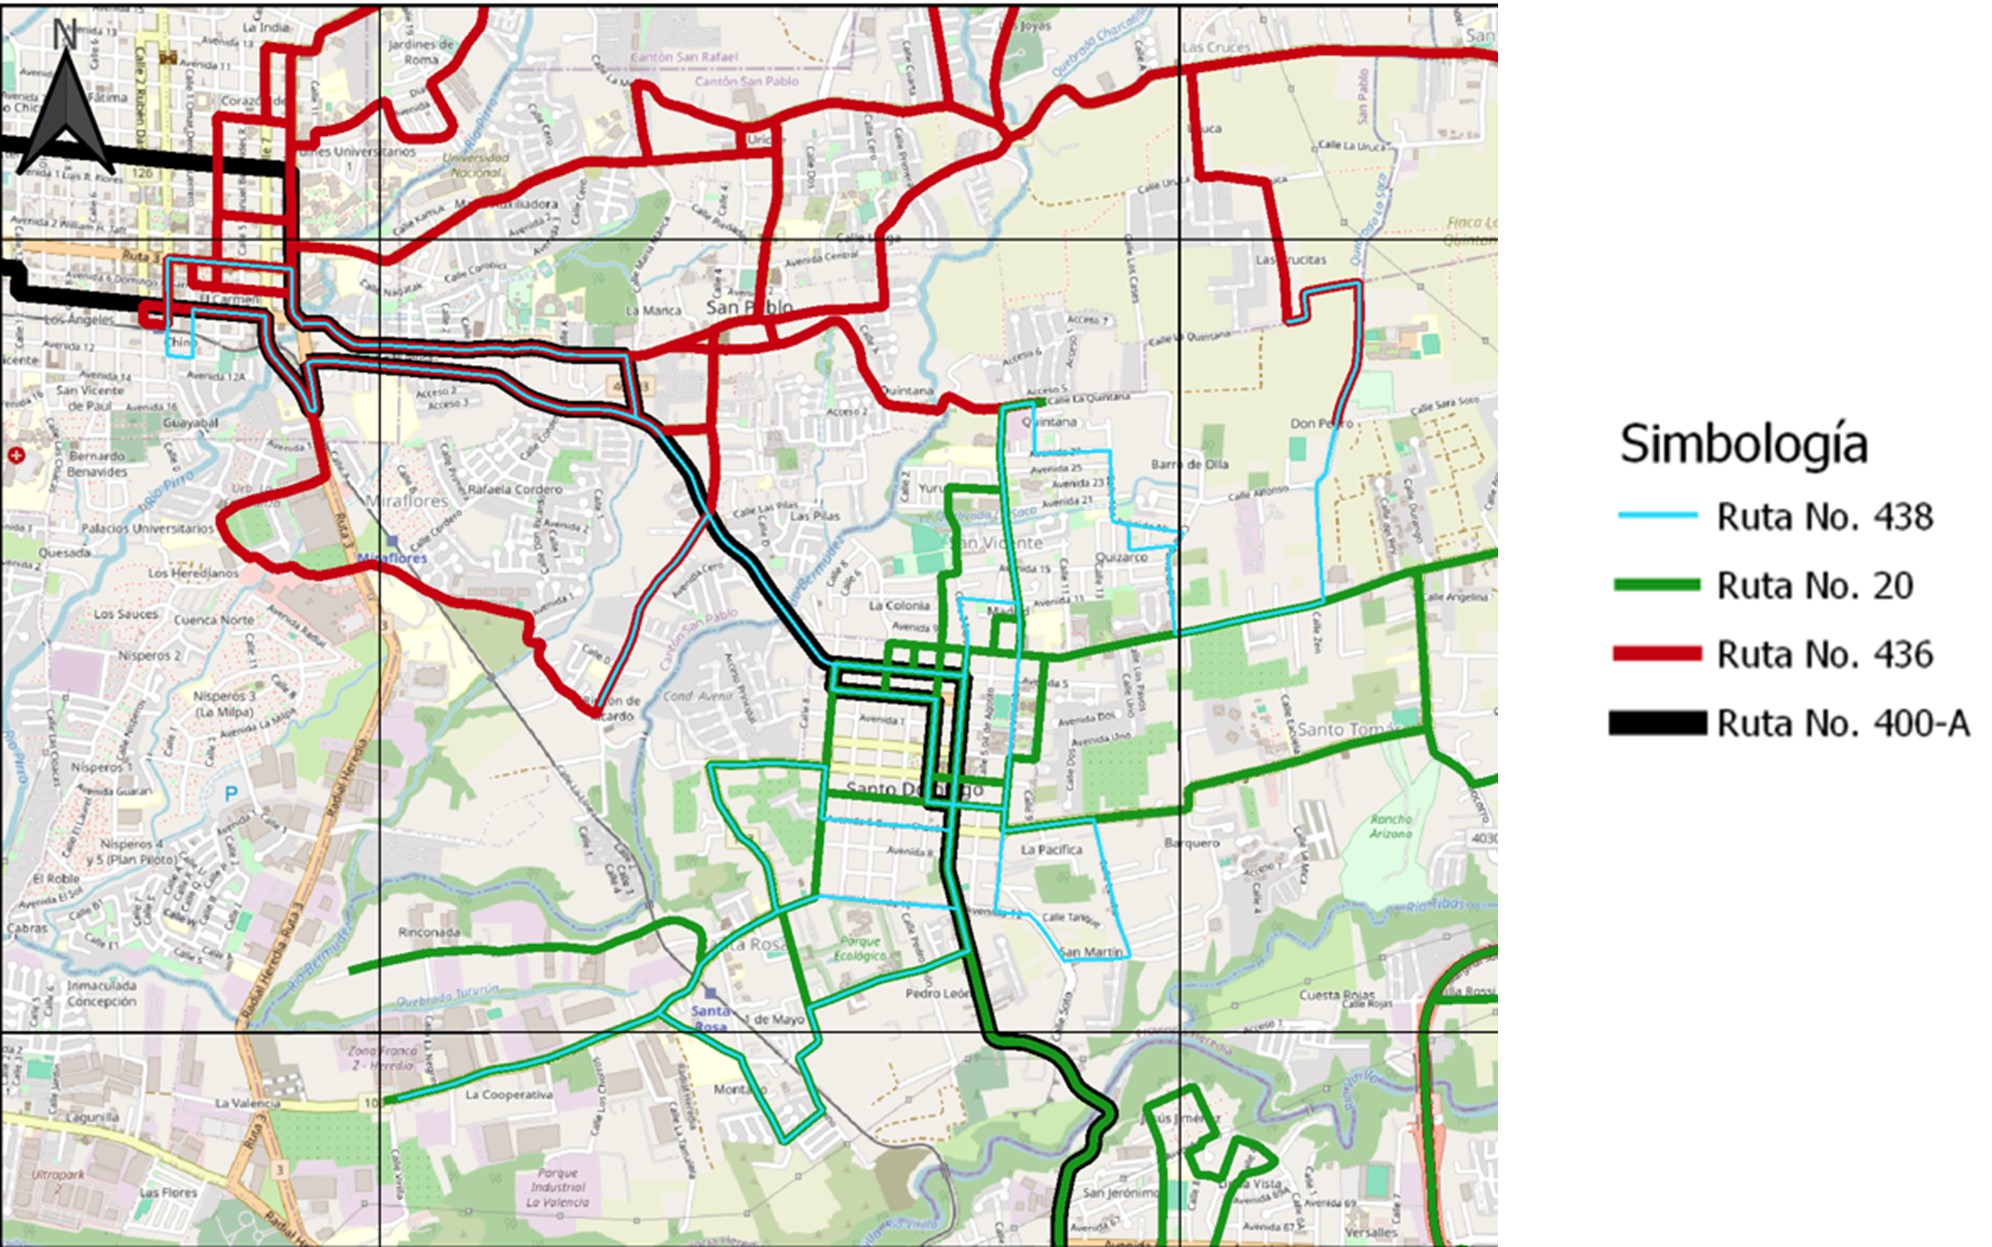 Mapas con las rutas alternas: Ruta 438 de color celeste, Ruta 20 de color verde, Ruta 436 de color rojo y Ruta 400-A de color negro